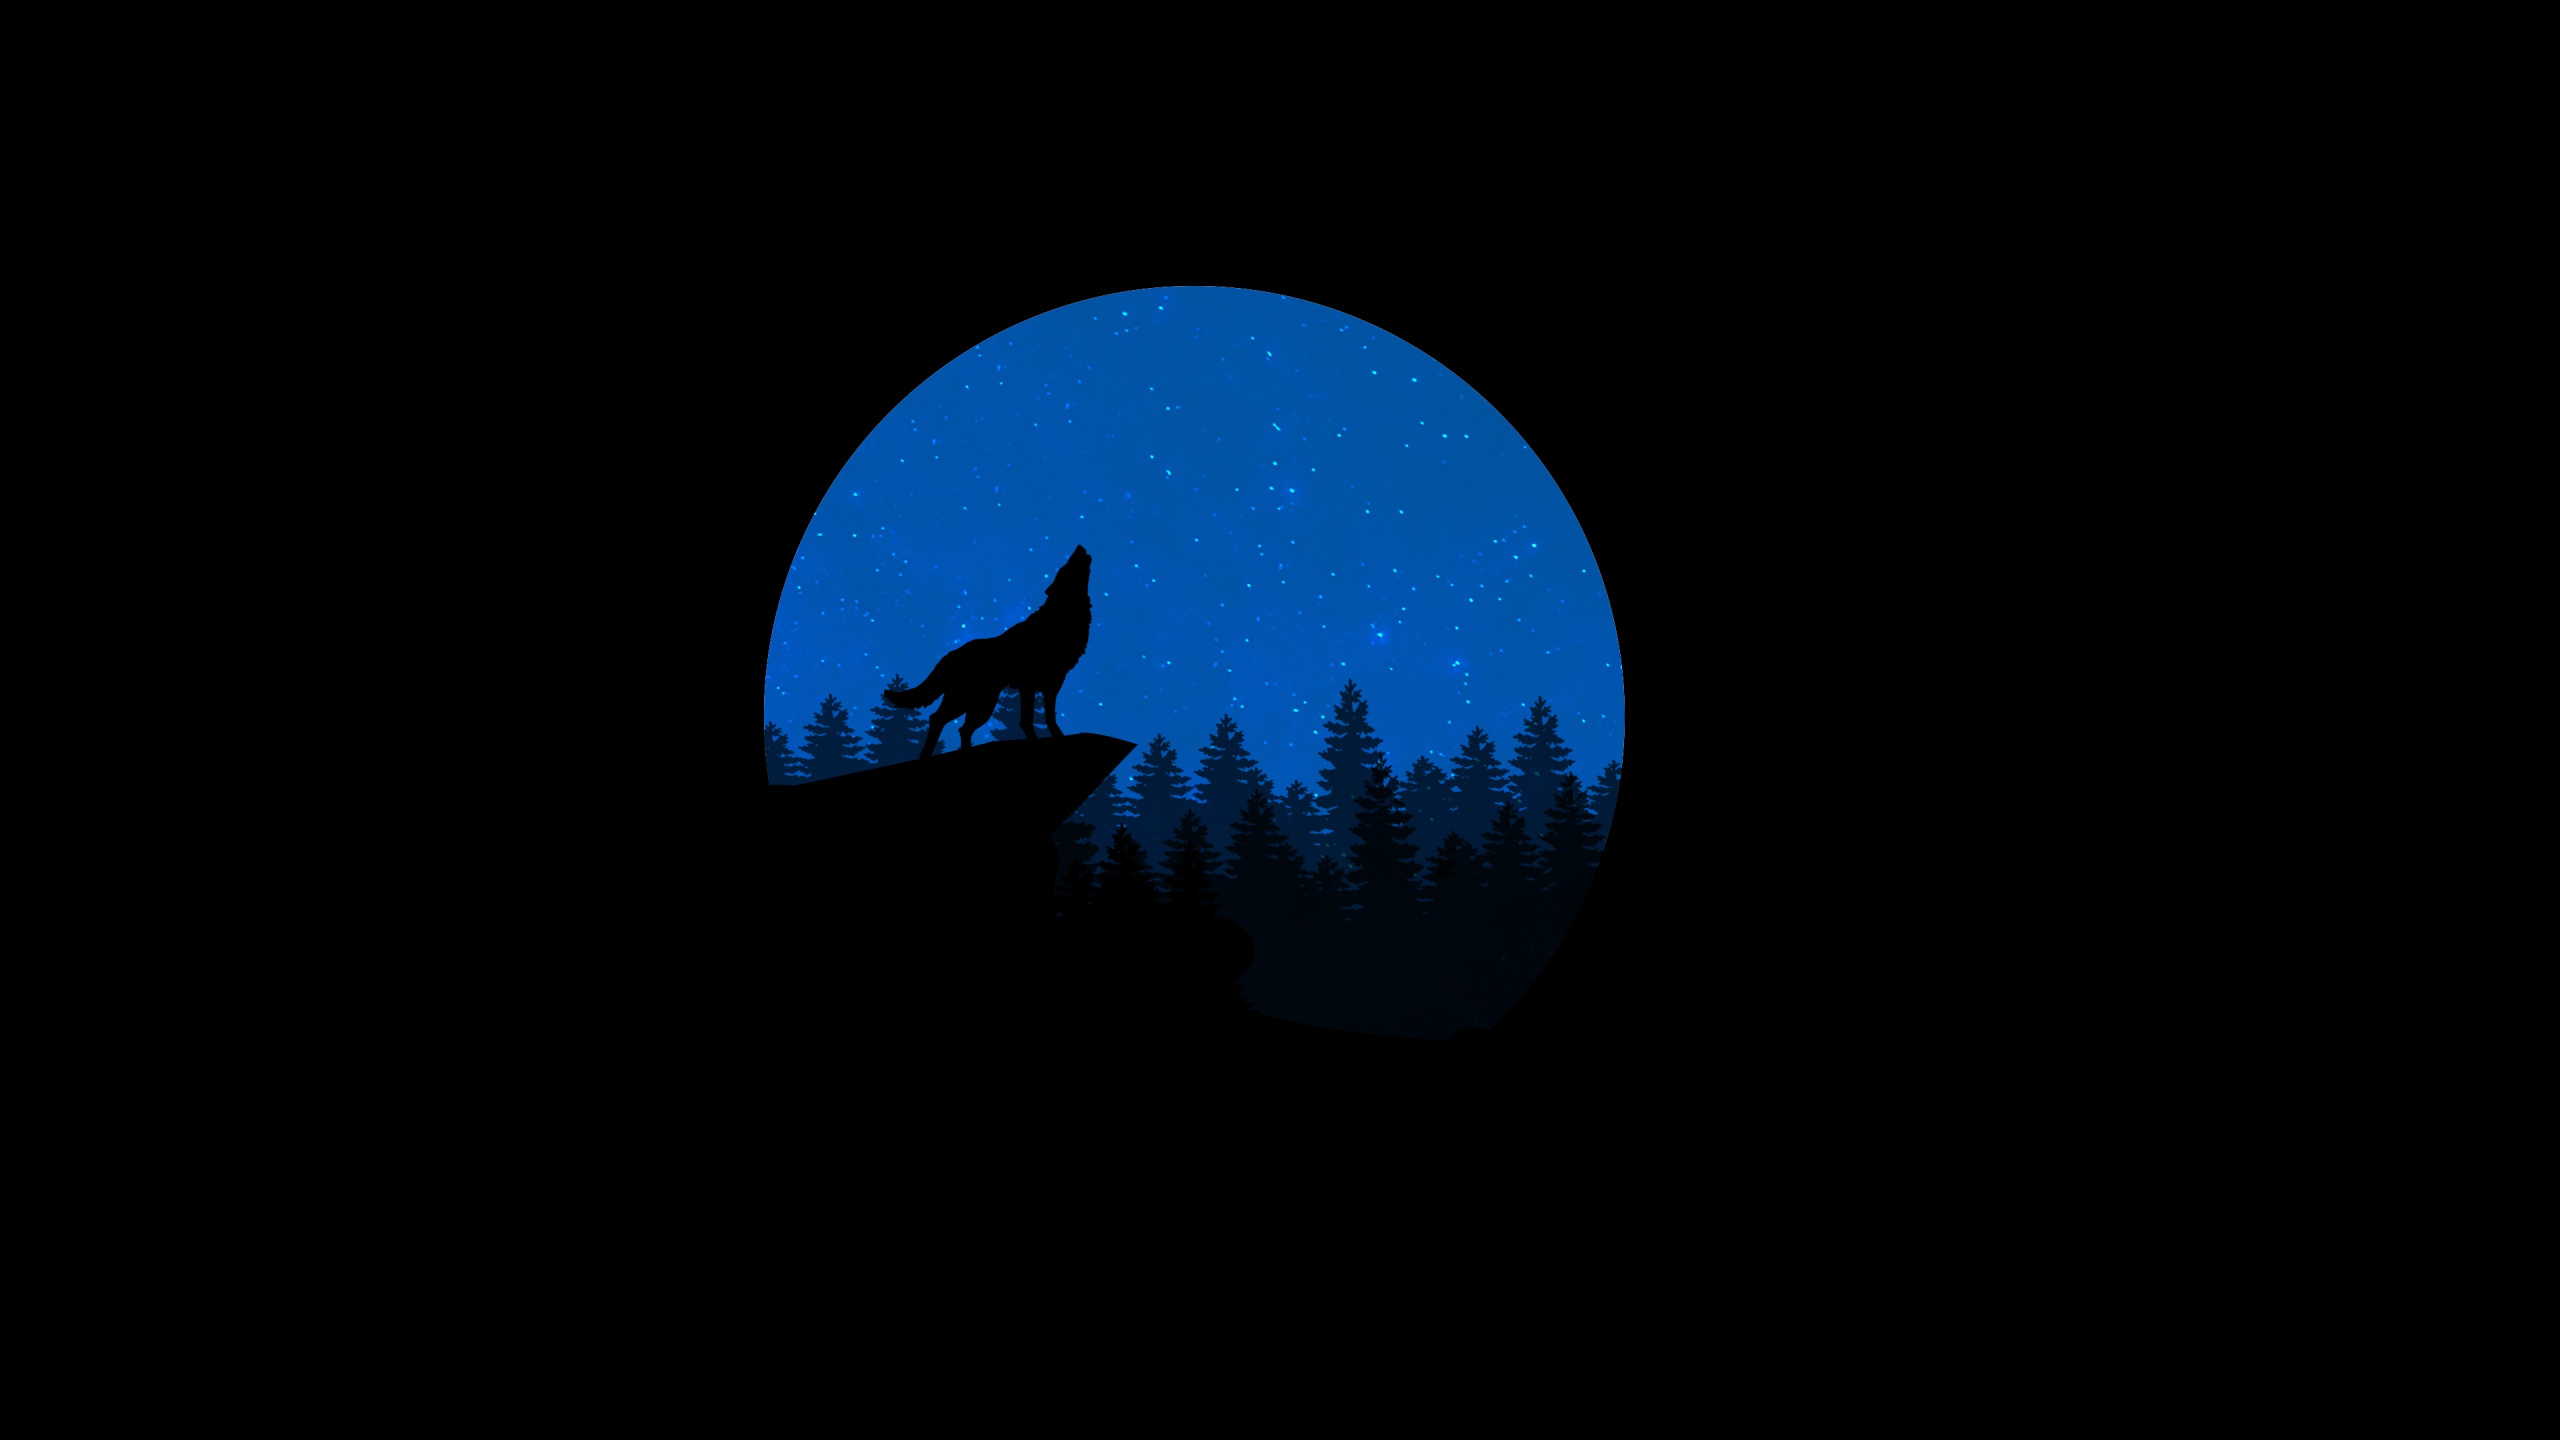 Silhouette de Personne Debout Sous la Lune Bleue. Wallpaper in 2560x1440 Resolution